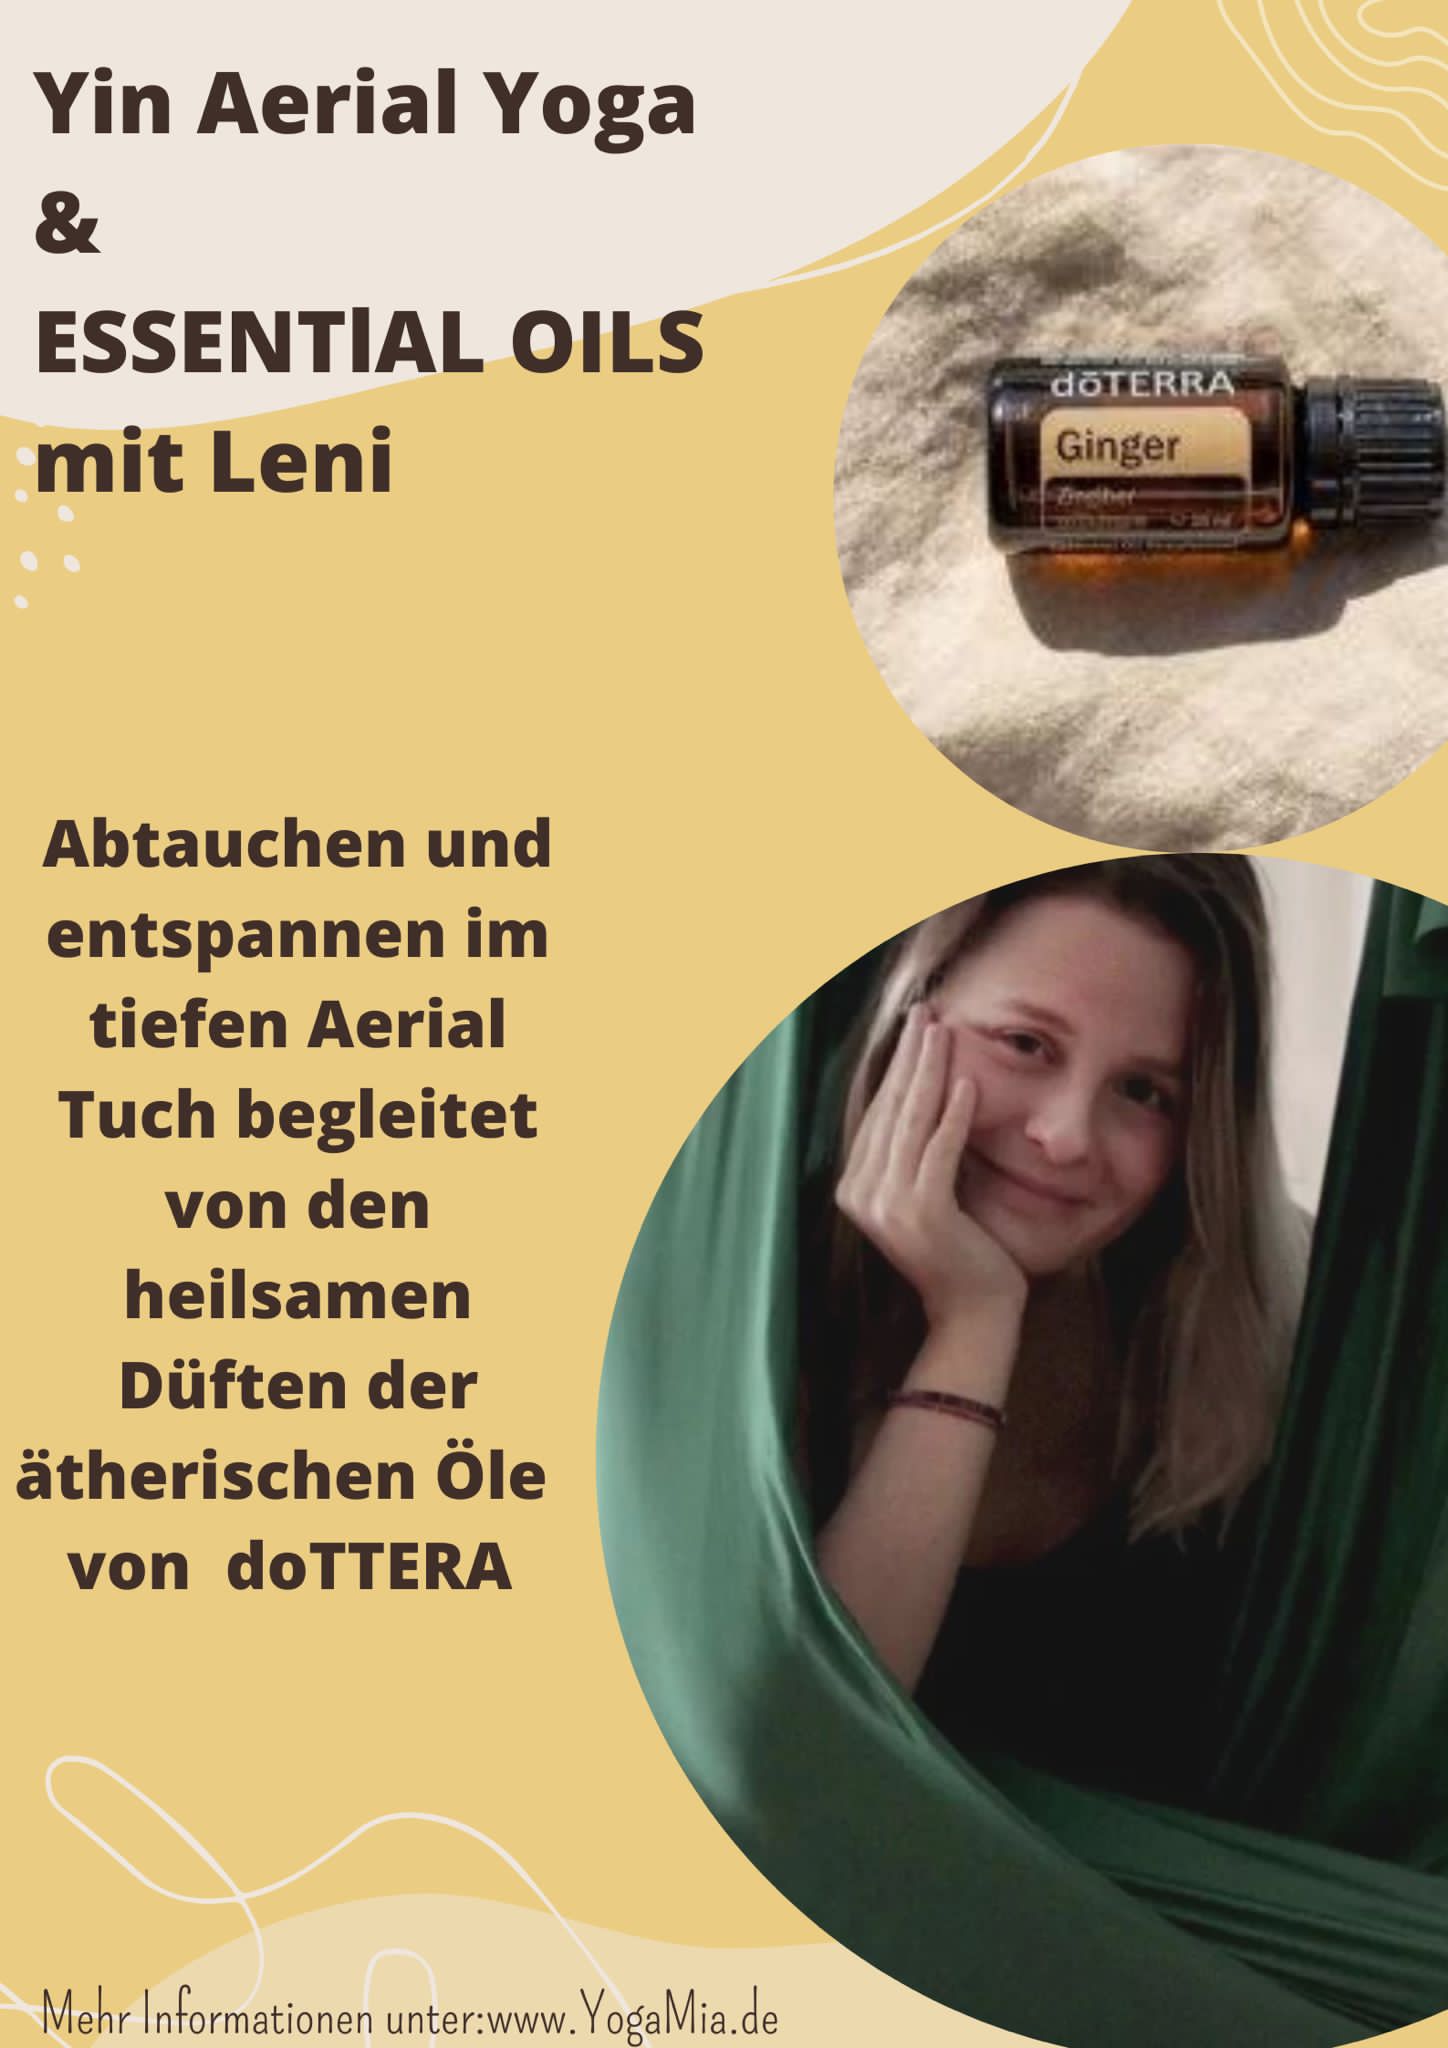 Yin Aerial Yoga & Essential Oils mit Leni